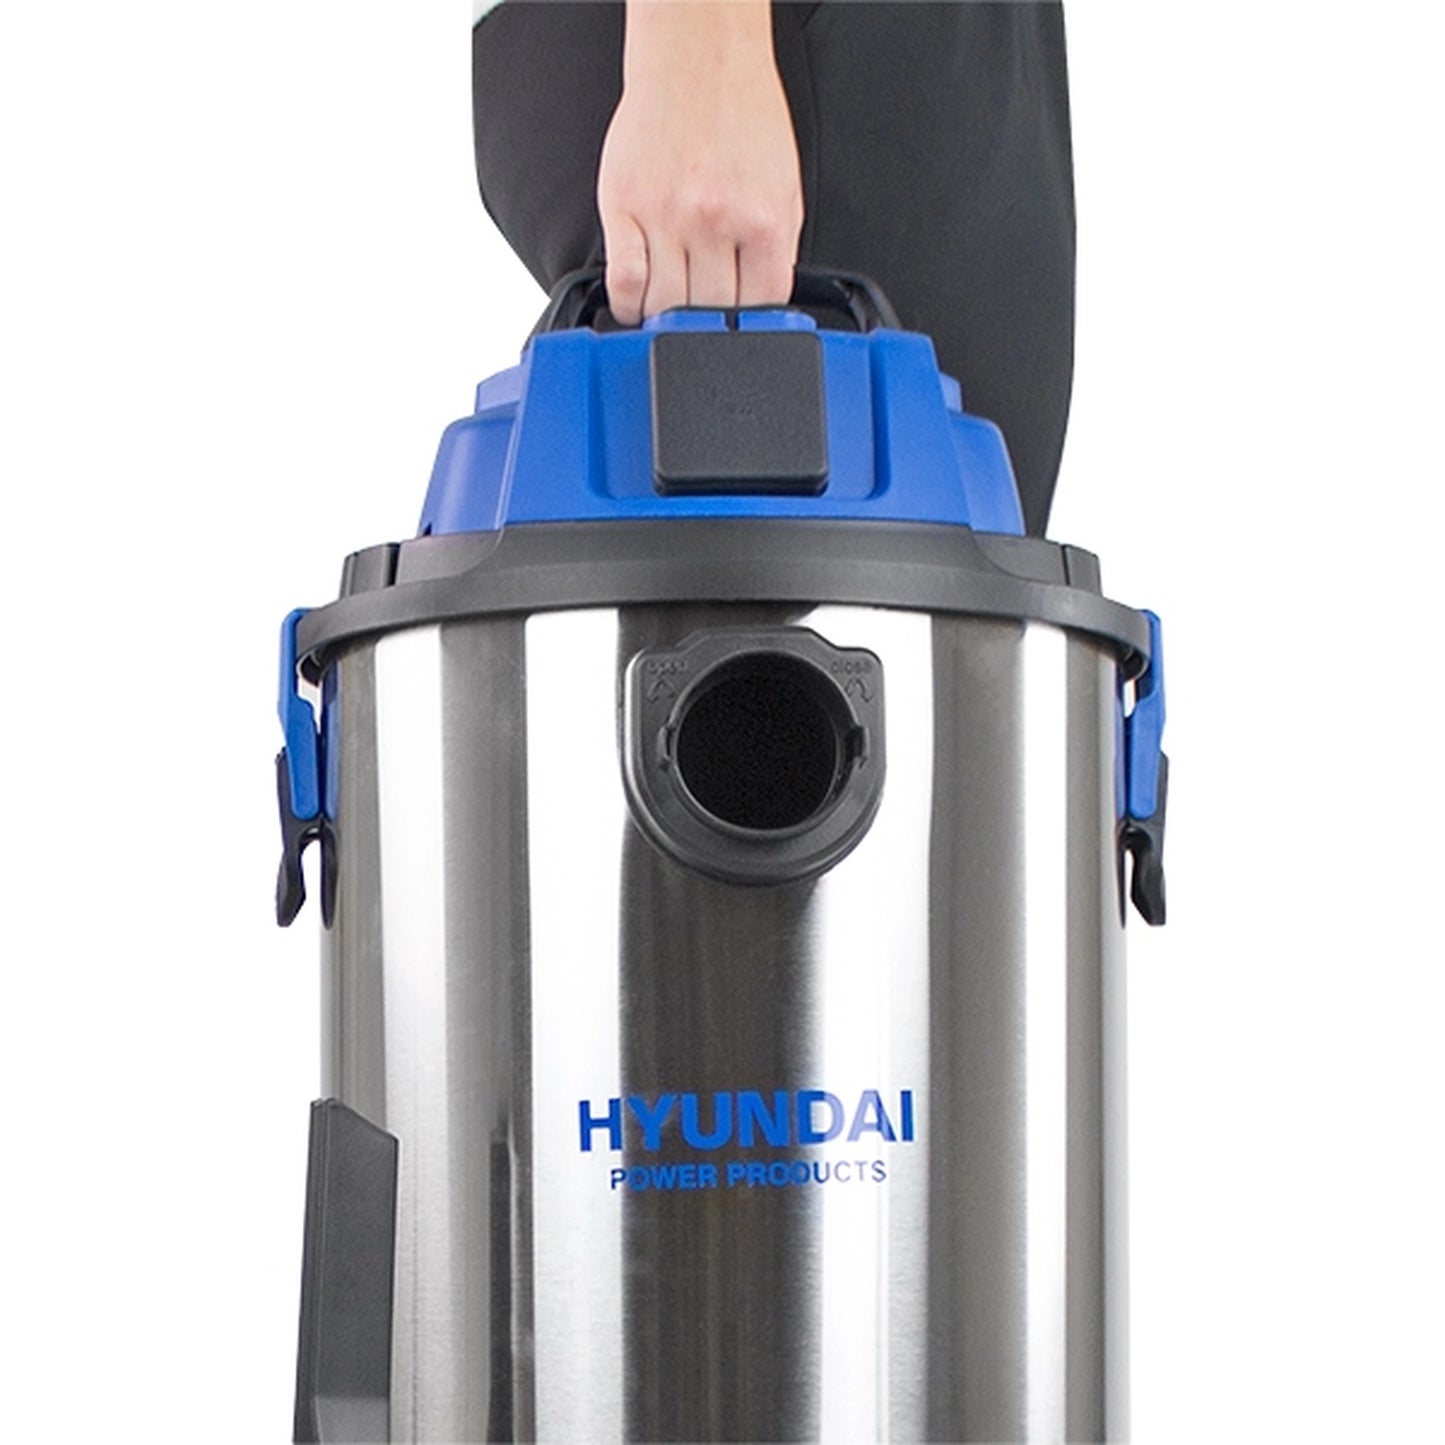 Hyundai HYVI3014 3-In-1 Electric Vacuum Cleaner